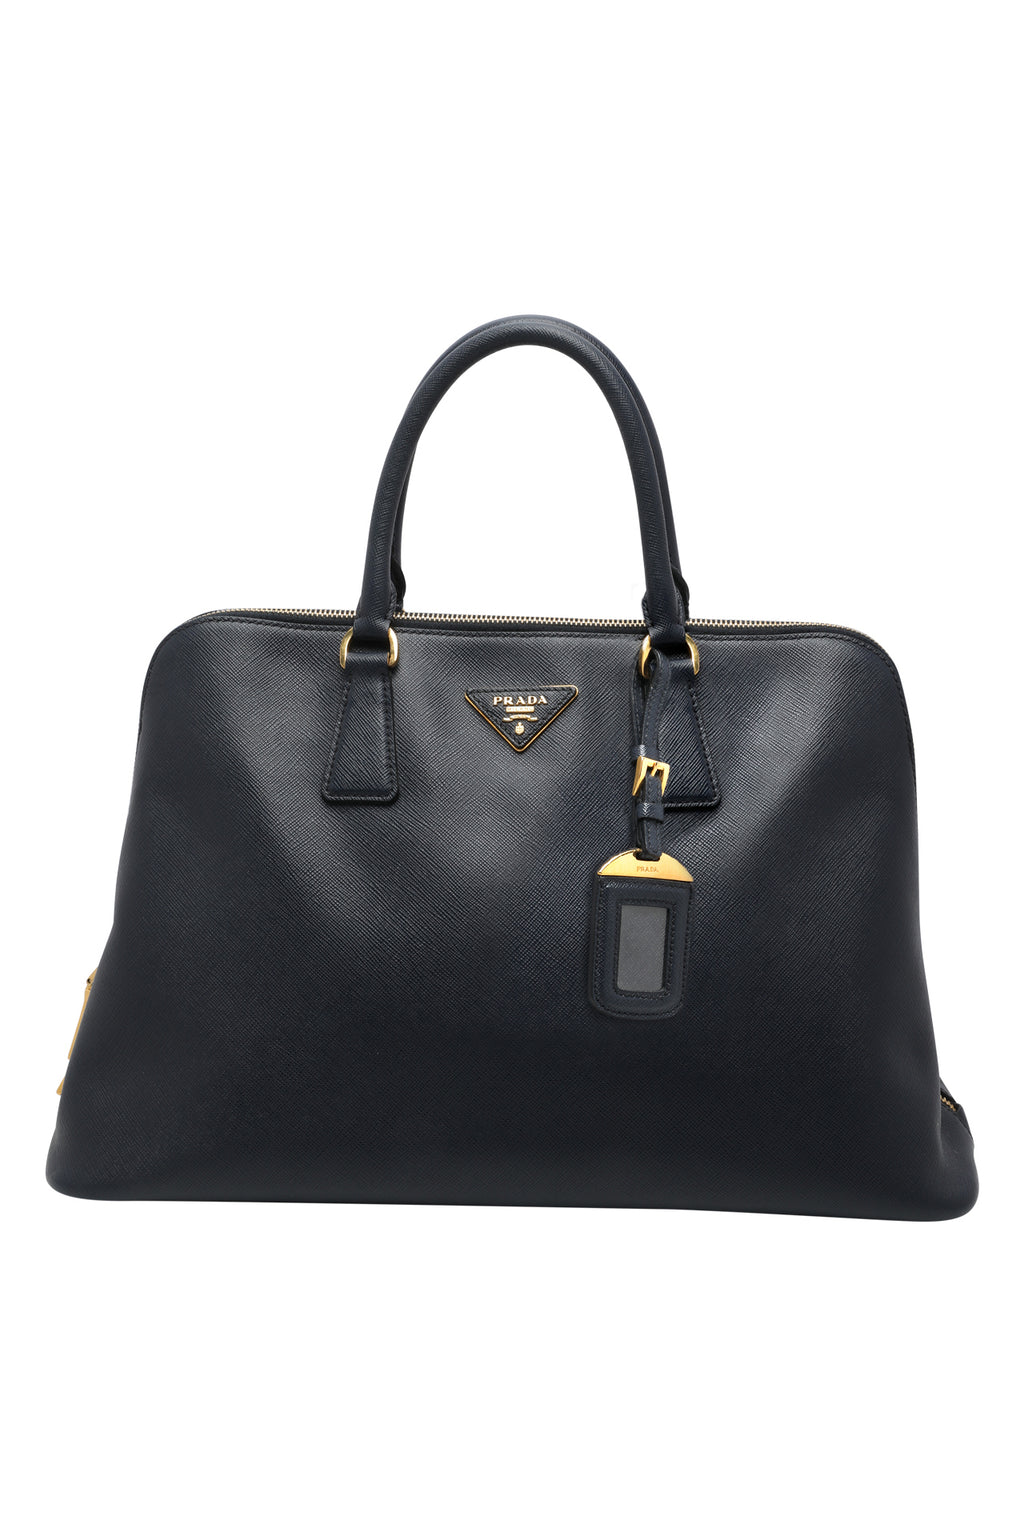 Prada Promenade Bag Saffiano Leather